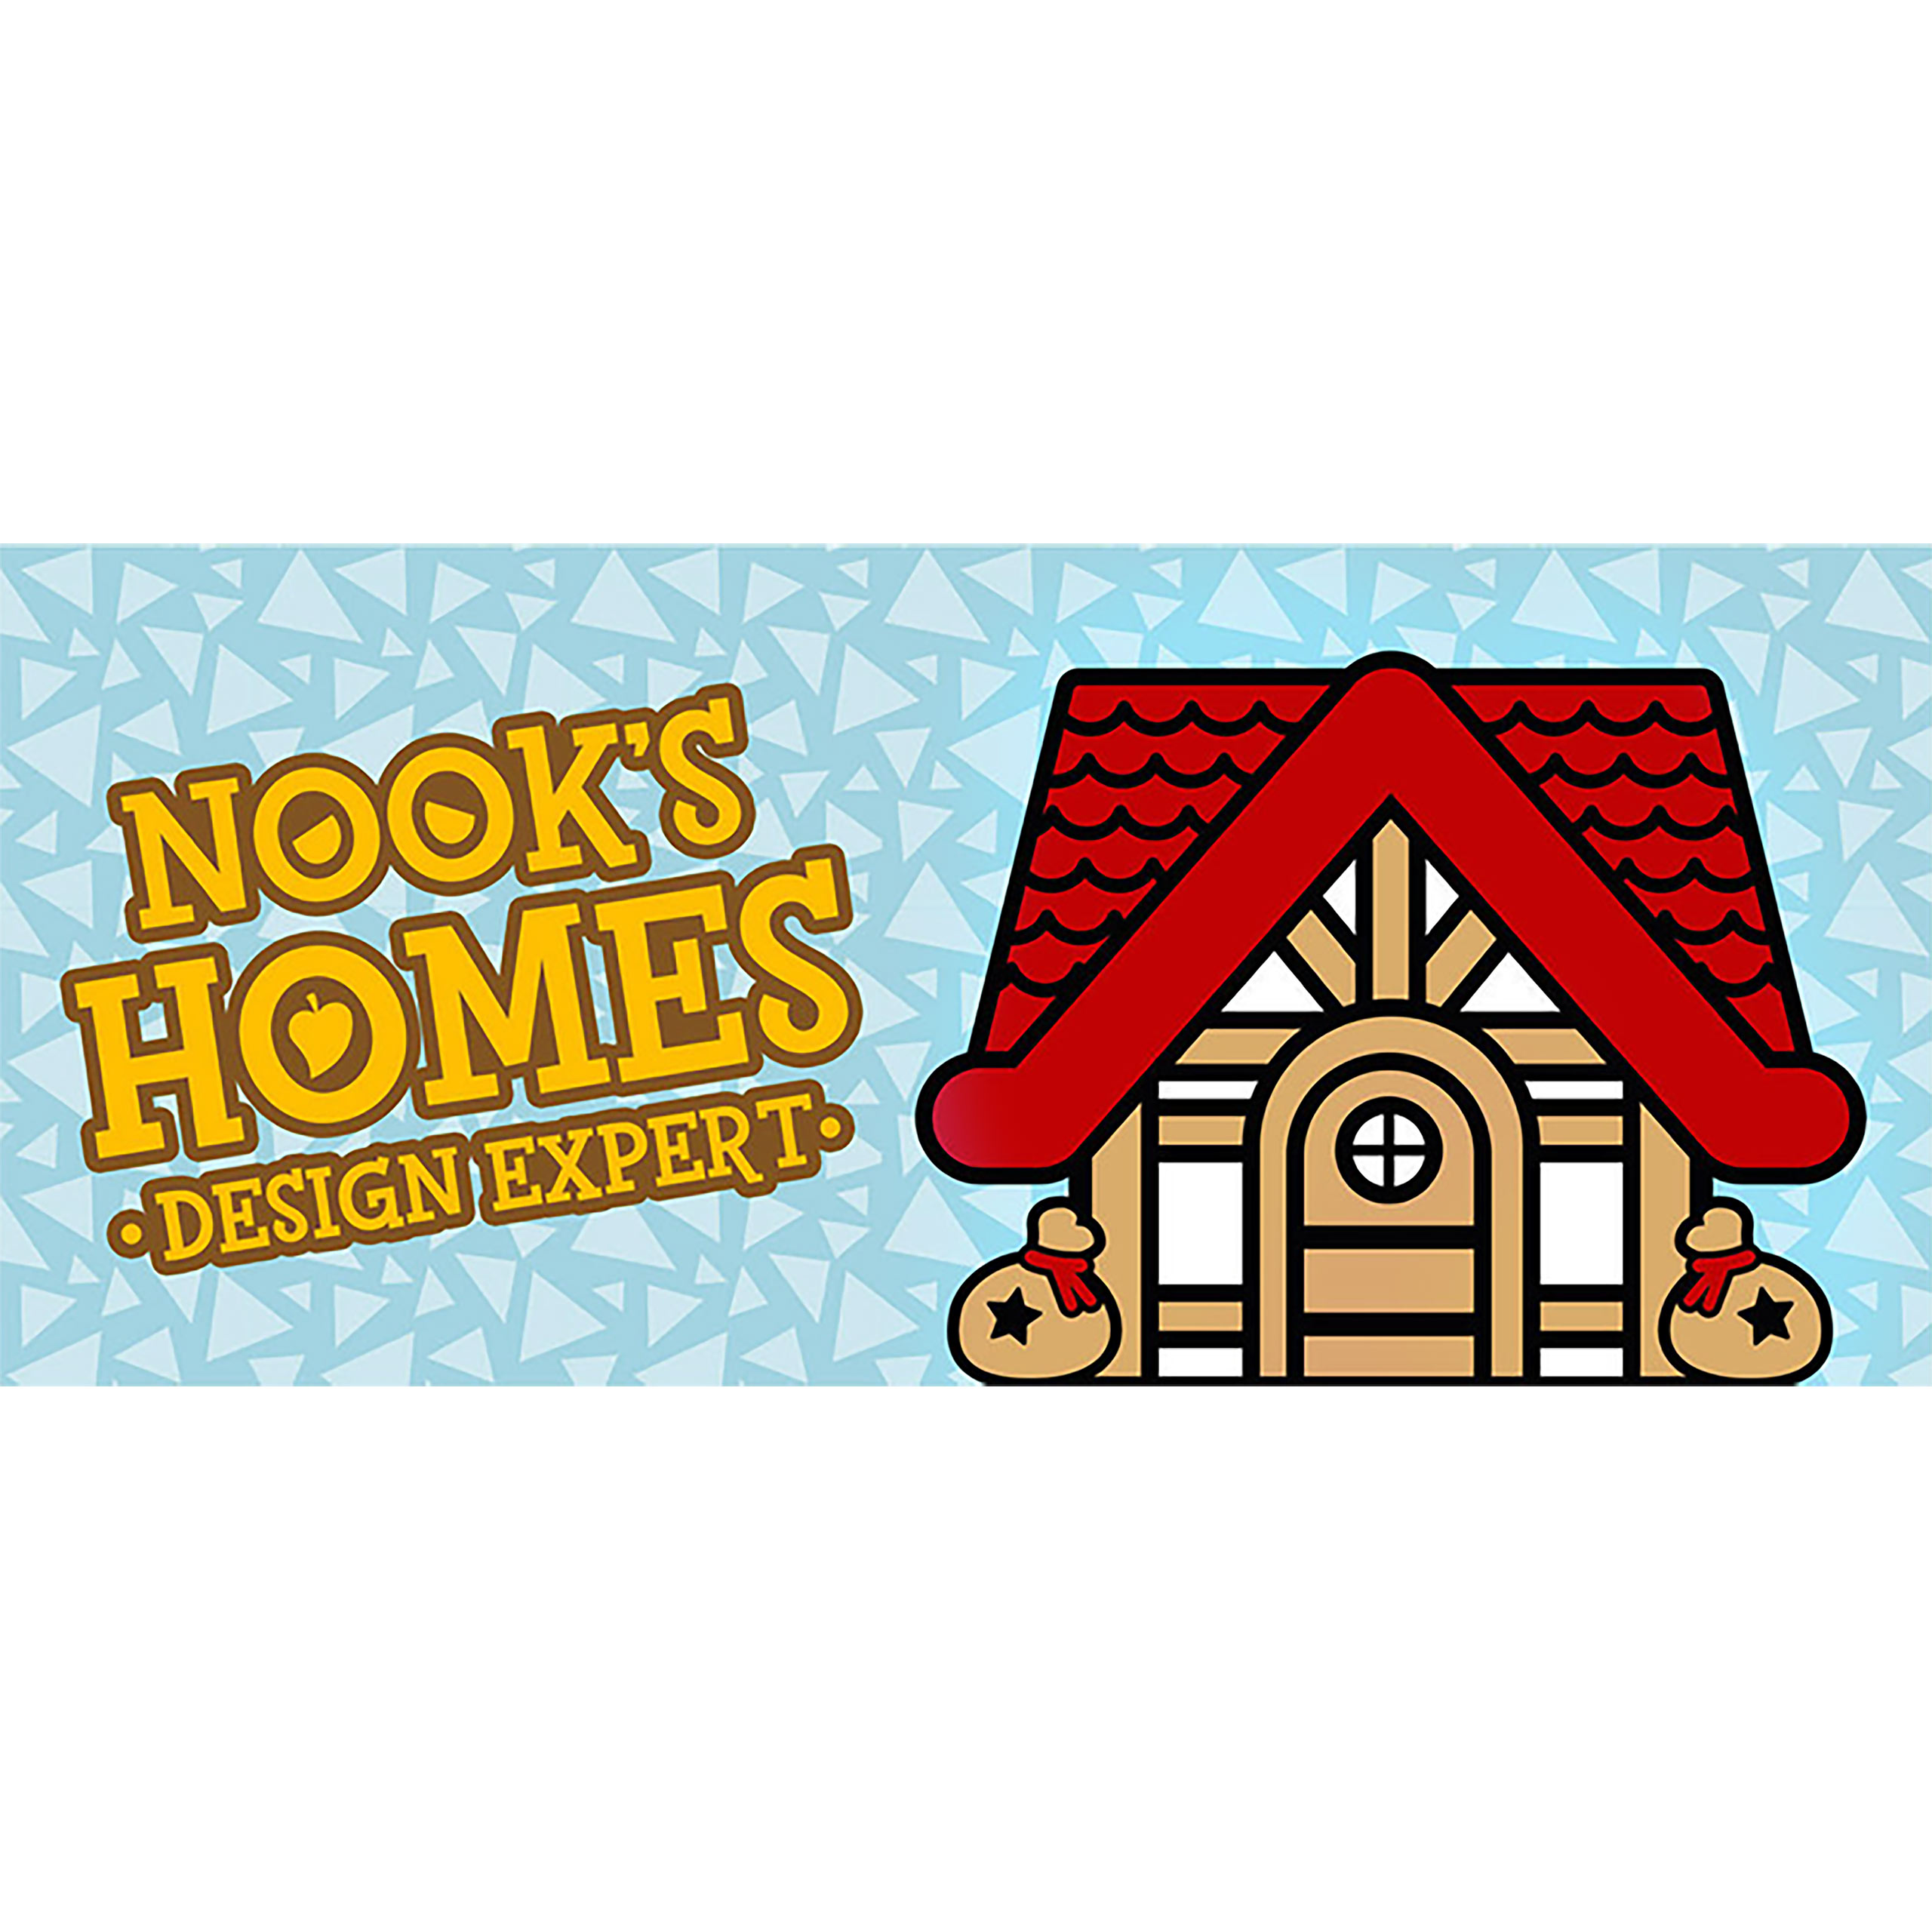 Nook's Homes Mok voor Animal Crossing Fans